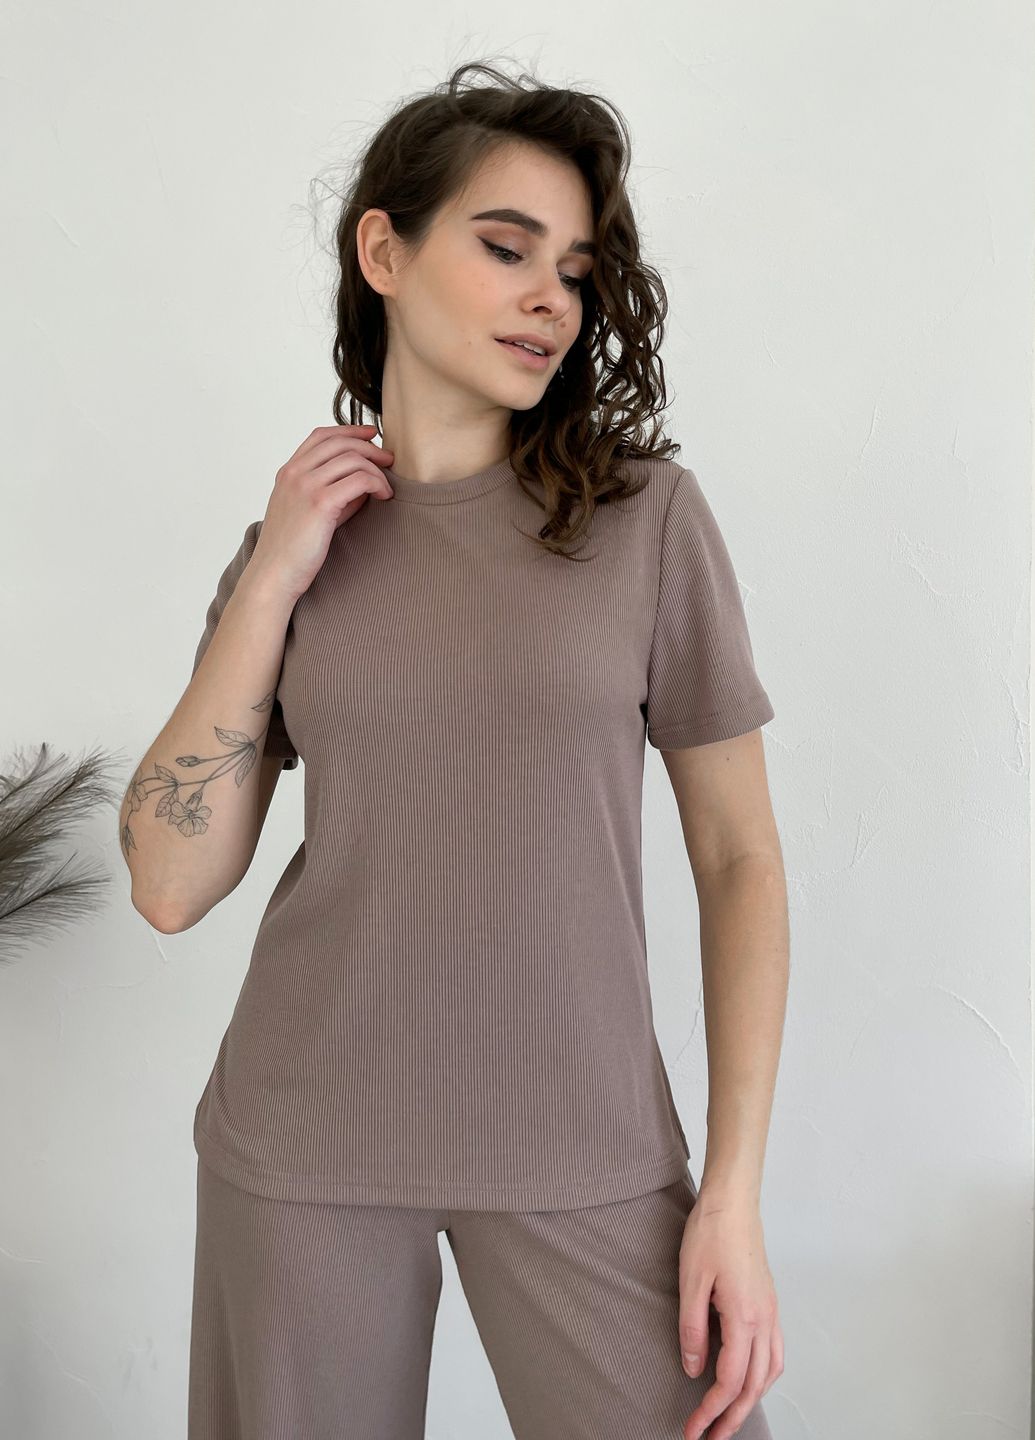 Купить Костюм женский в рубчик футболка со штанами клеш мокко Merlini Монцано 100000524, размер XS-M (40-44) в интернет-магазине